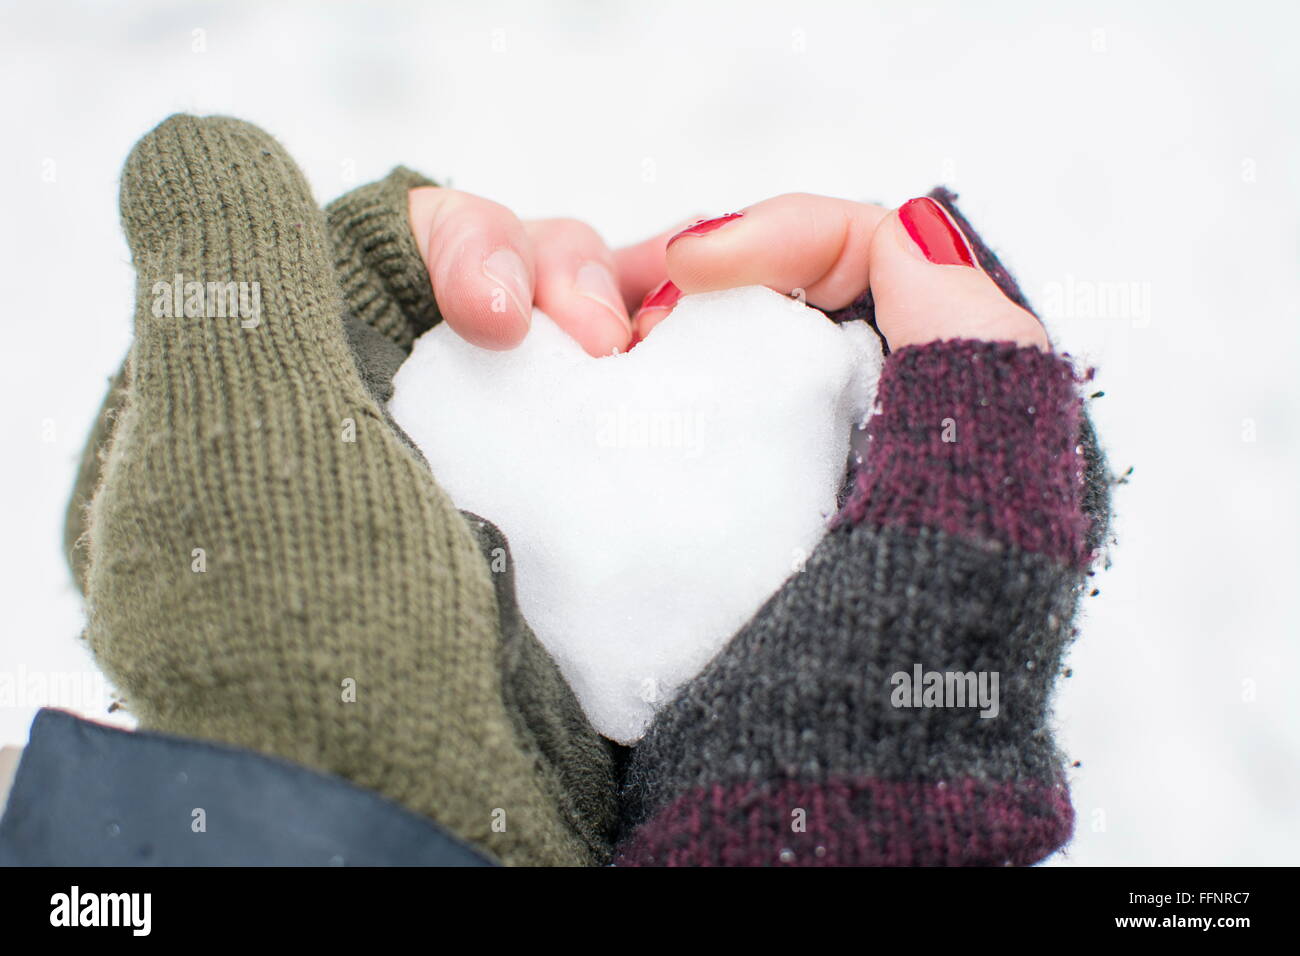 Boy's et girl's hand holding a fait de neige Banque D'Images